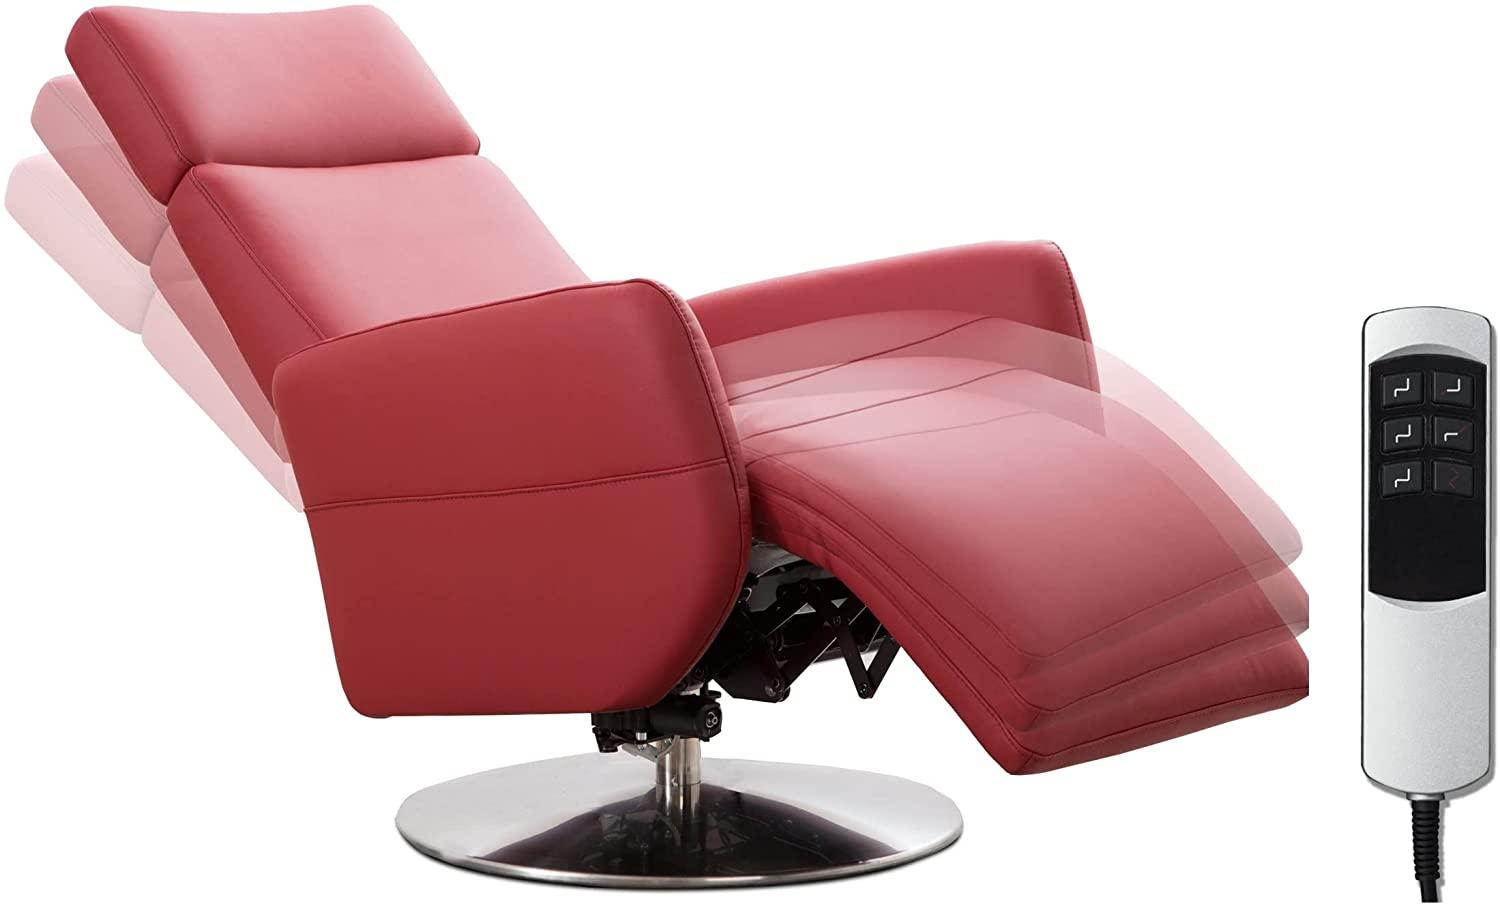 Cavadore TV-Sessel Cobra mit 2 E-Motoren / Elektrischer Fernsehsessel mit Fernbedienung / Relaxfunktion, Liegefunktion / Ergonomie L / Belastbar bis 130 kg / 71 x 112 x 82 / Echtleder Rot Bild 1